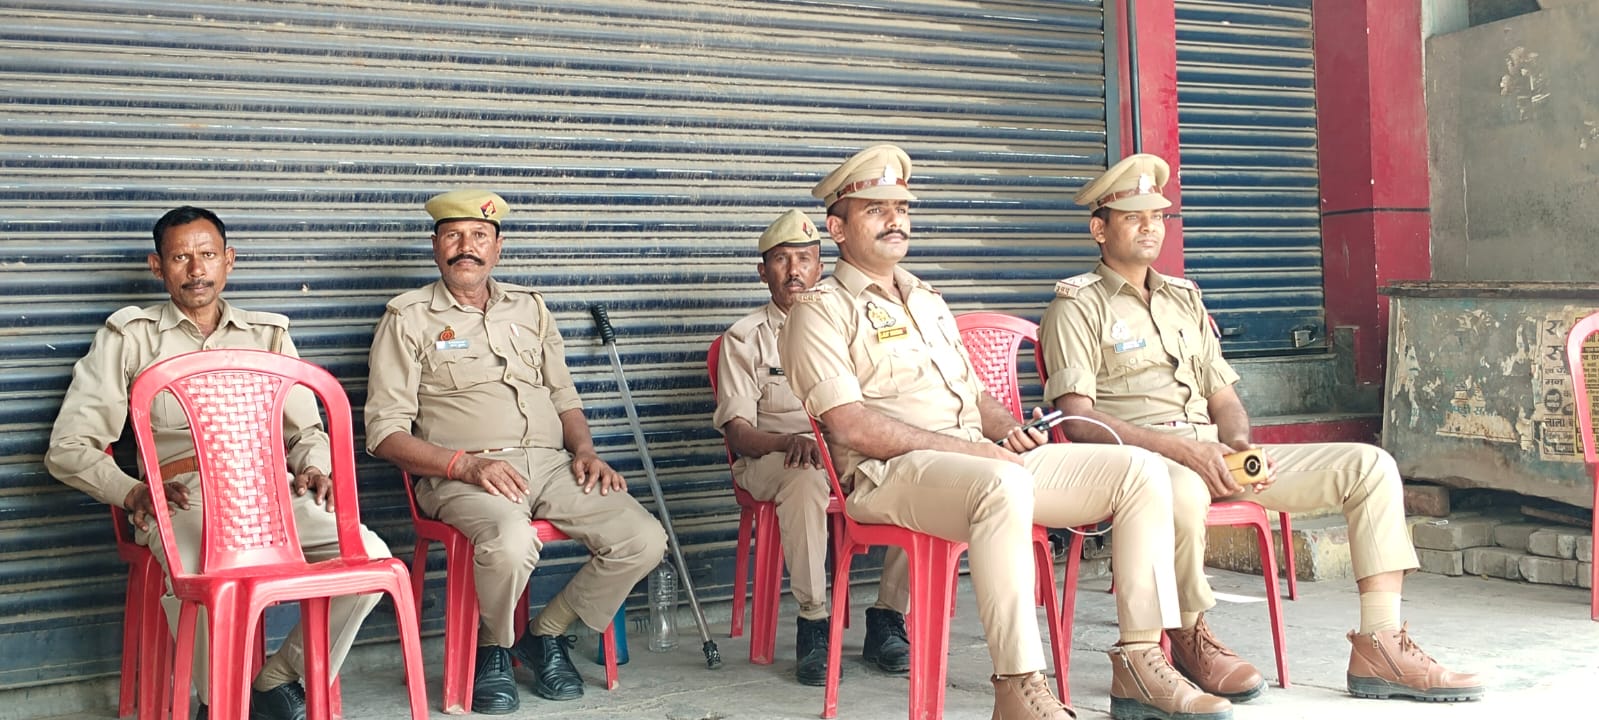 शाहजहांपुर: धार्मिक स्थल पर धार्मिक नारे लिखने पर आक्रोश, पुलिस फोर्स तैनात